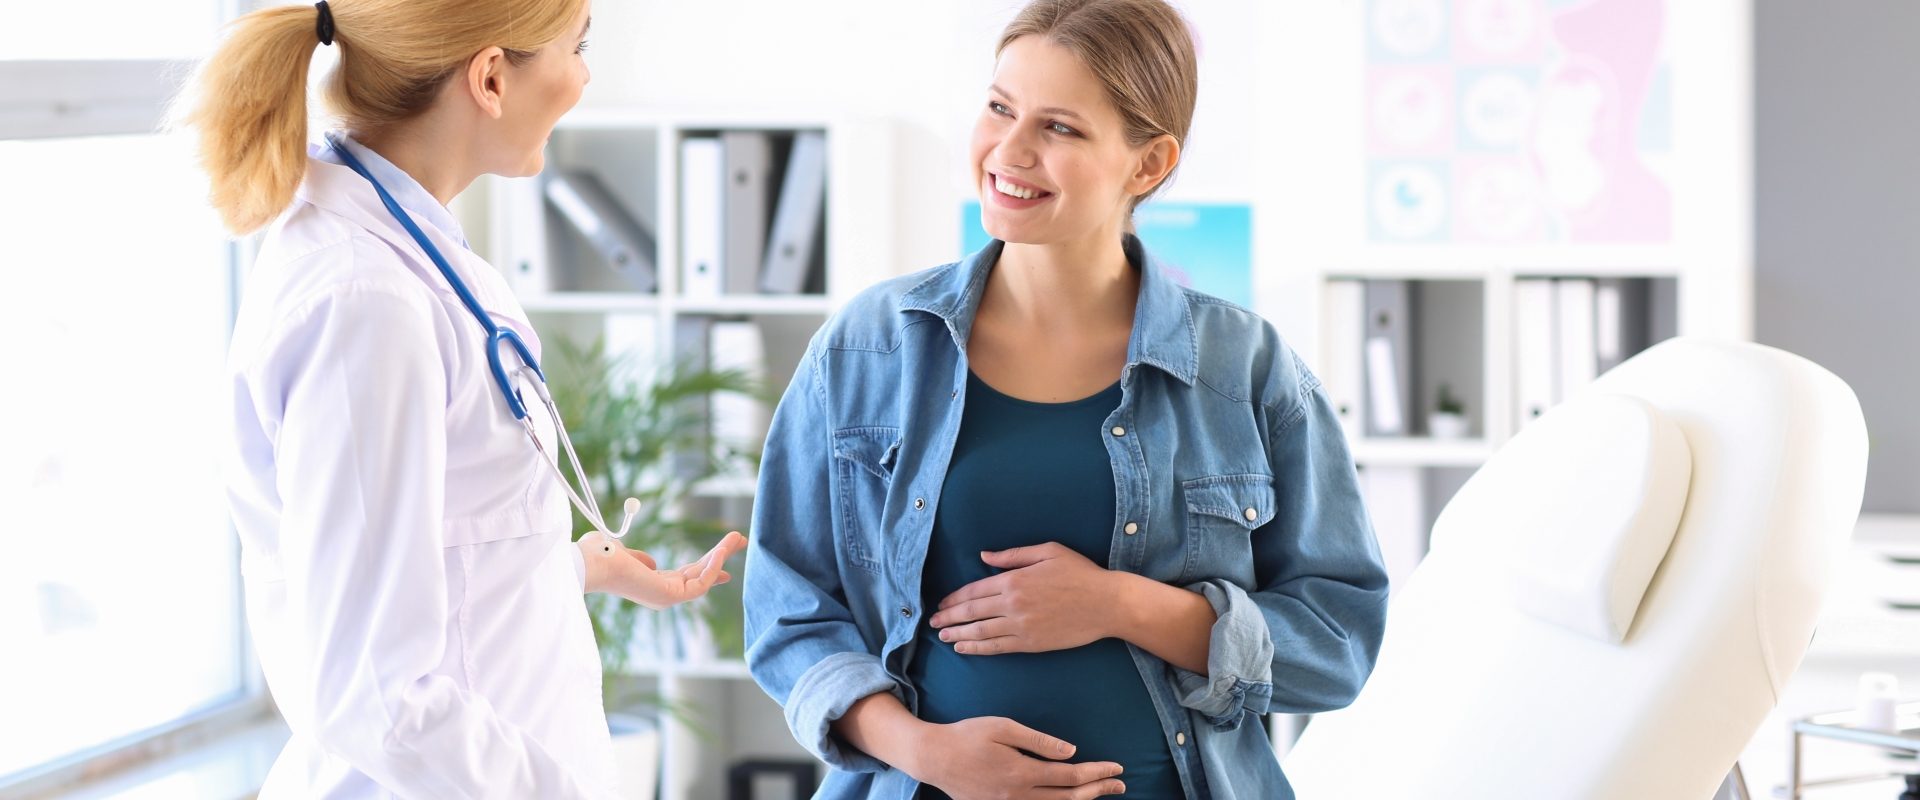 Badania prenatalne - co warto o nich wiedzieć? Kobieta w ciąży na wizycie lekarskiej u ginekologa.